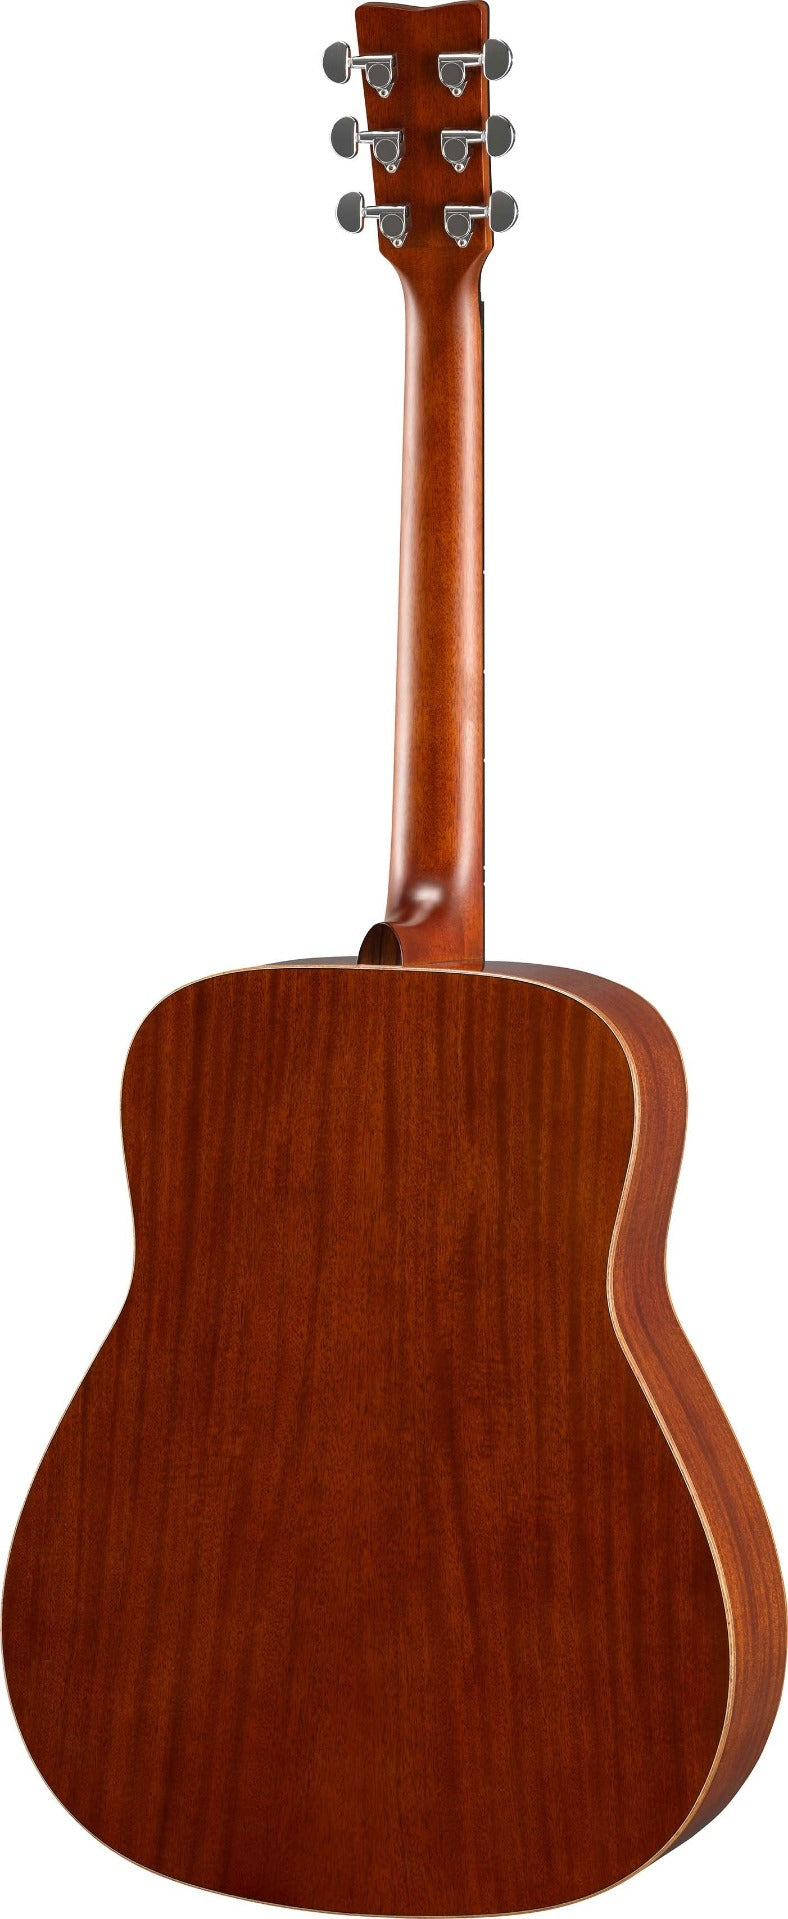 Yamaha FG850 Solid Top Acoustic Guitar, Mahogany